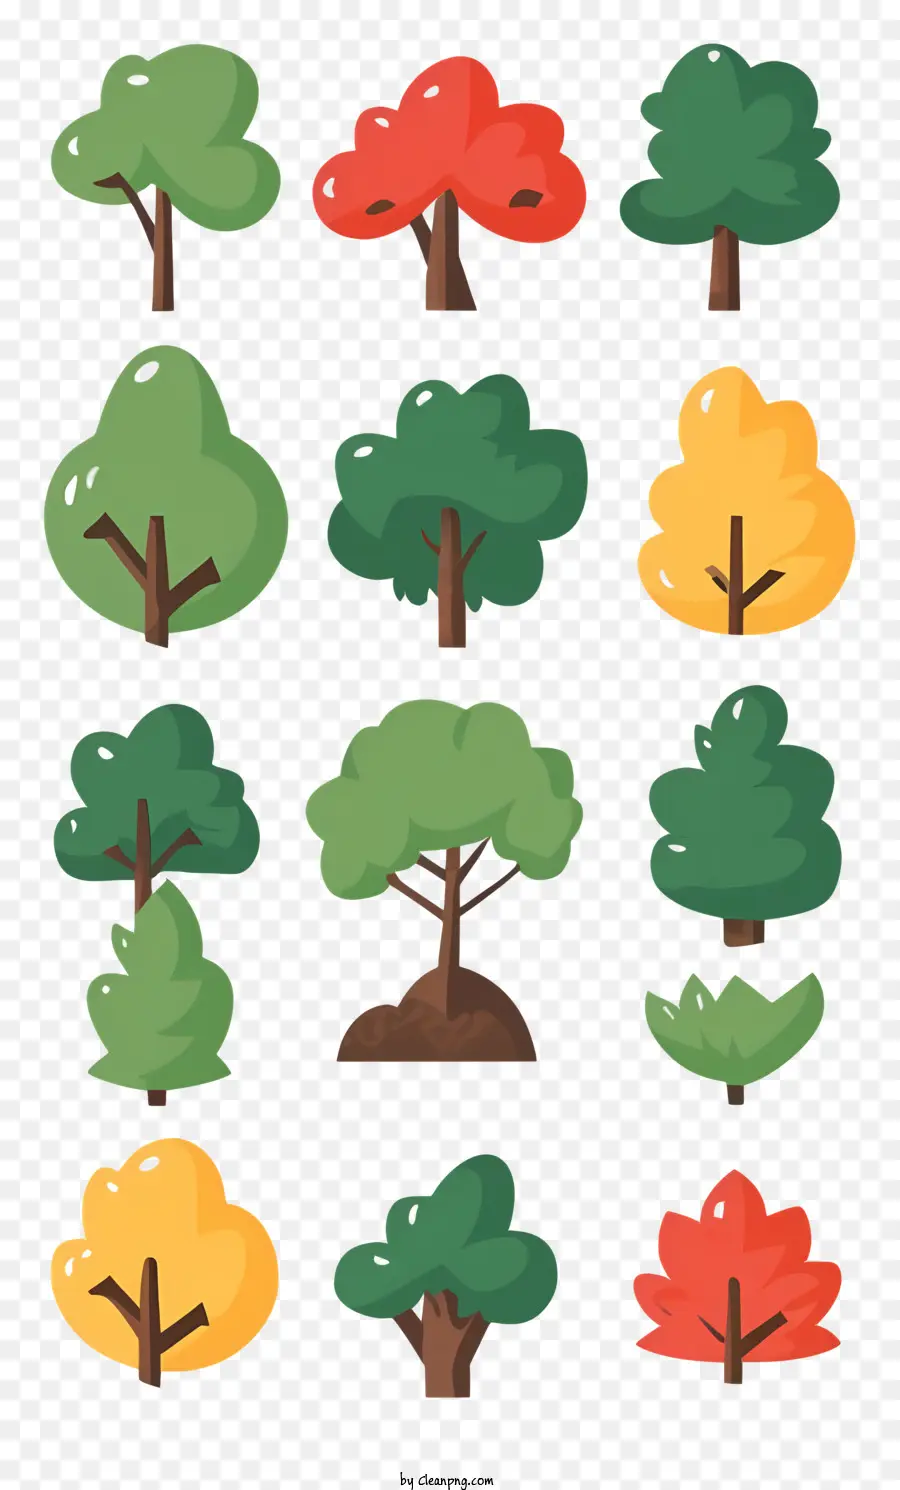 Bäume Farben Farbtöne hohe Bäume Breite Bäume - Herbstbäume in verschiedenen Farben und Größen